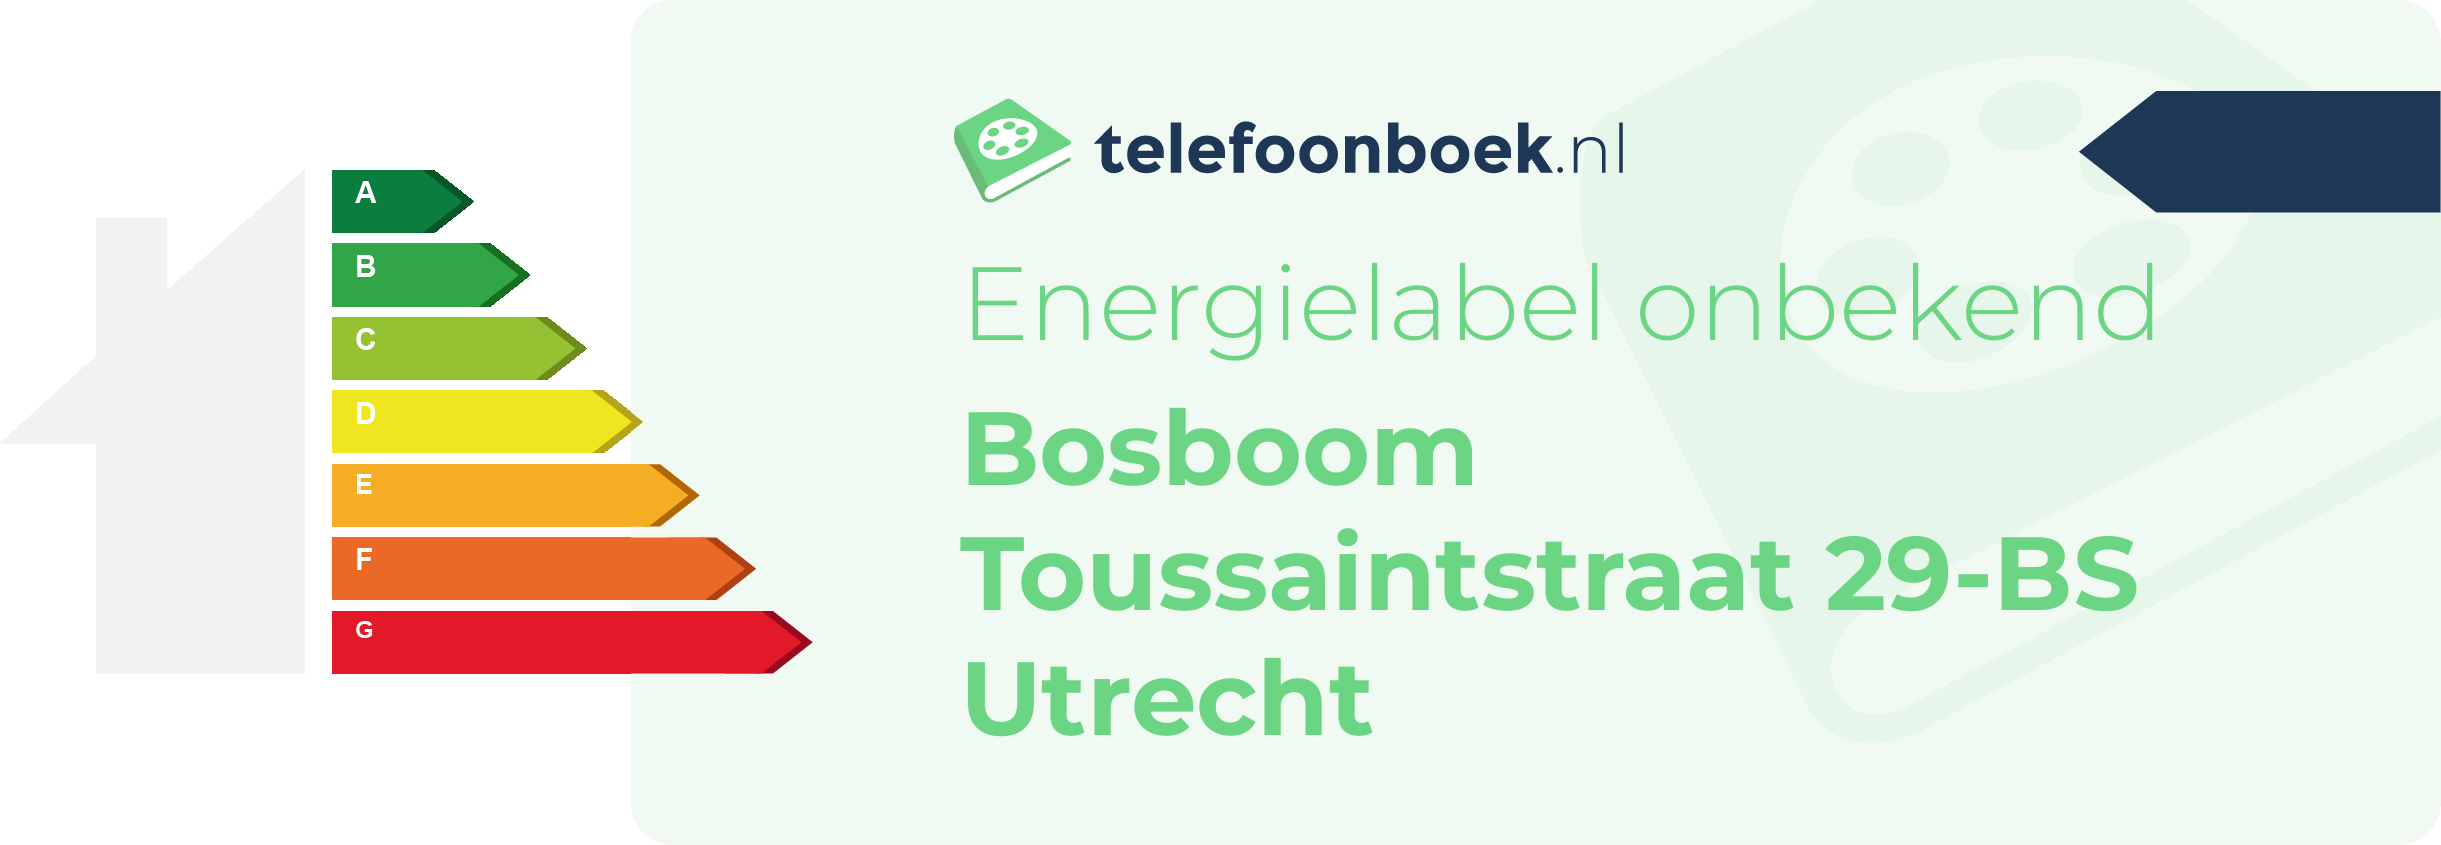 Energielabel Bosboom Toussaintstraat 29-BS Utrecht